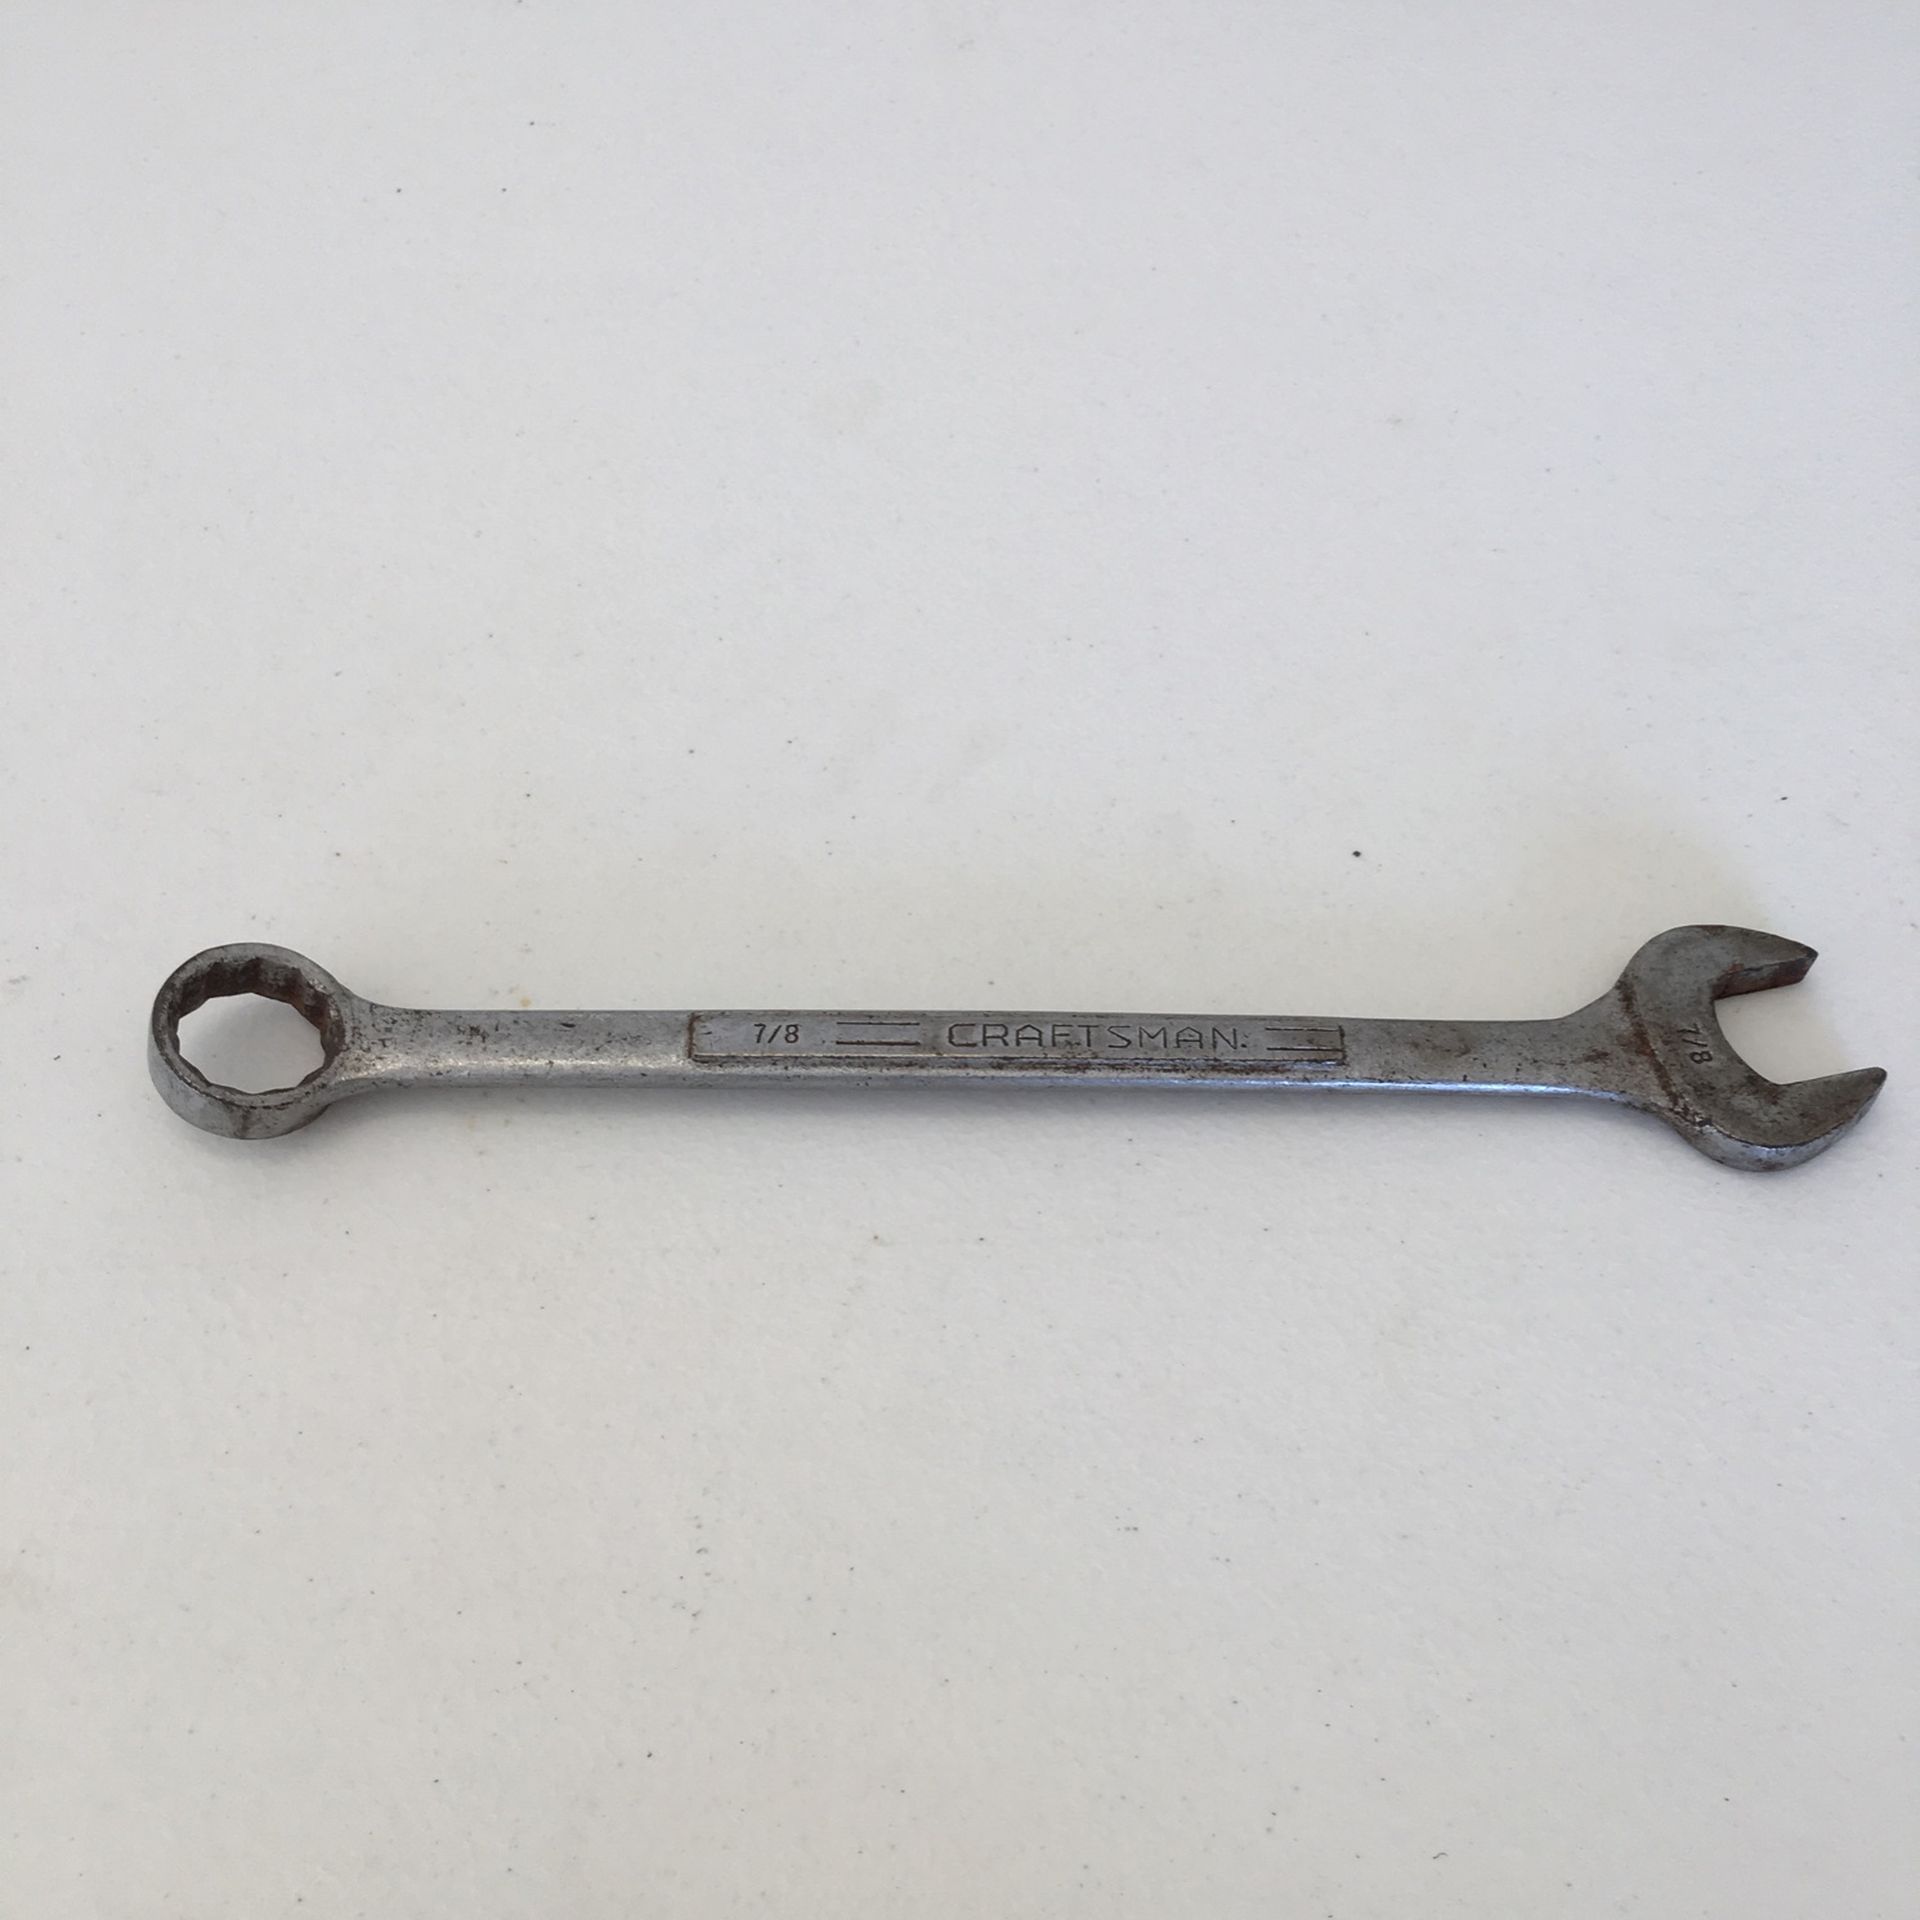 Long Craftsman 7/8” Wrench